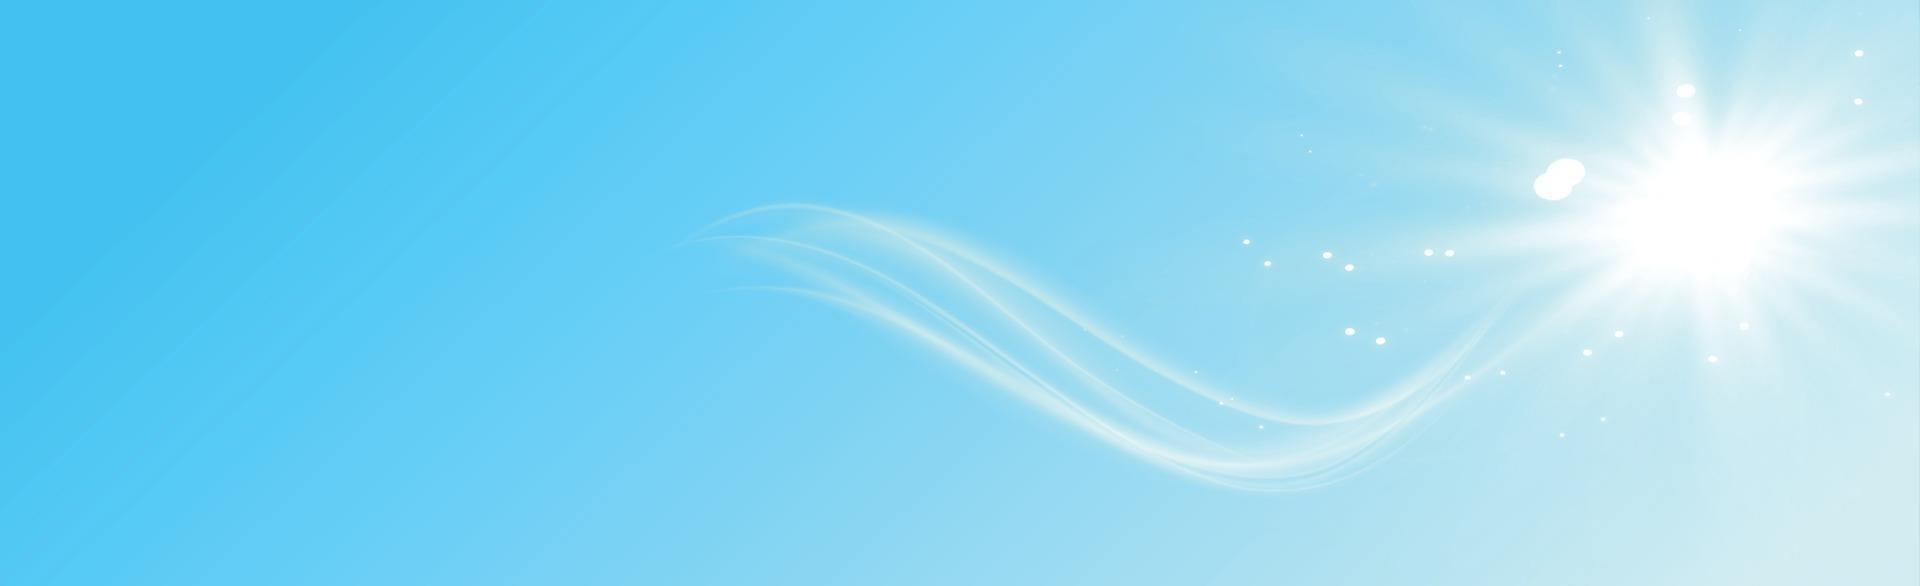 fundo panorâmico ensolarado na cor azul suave - ilustração vetor